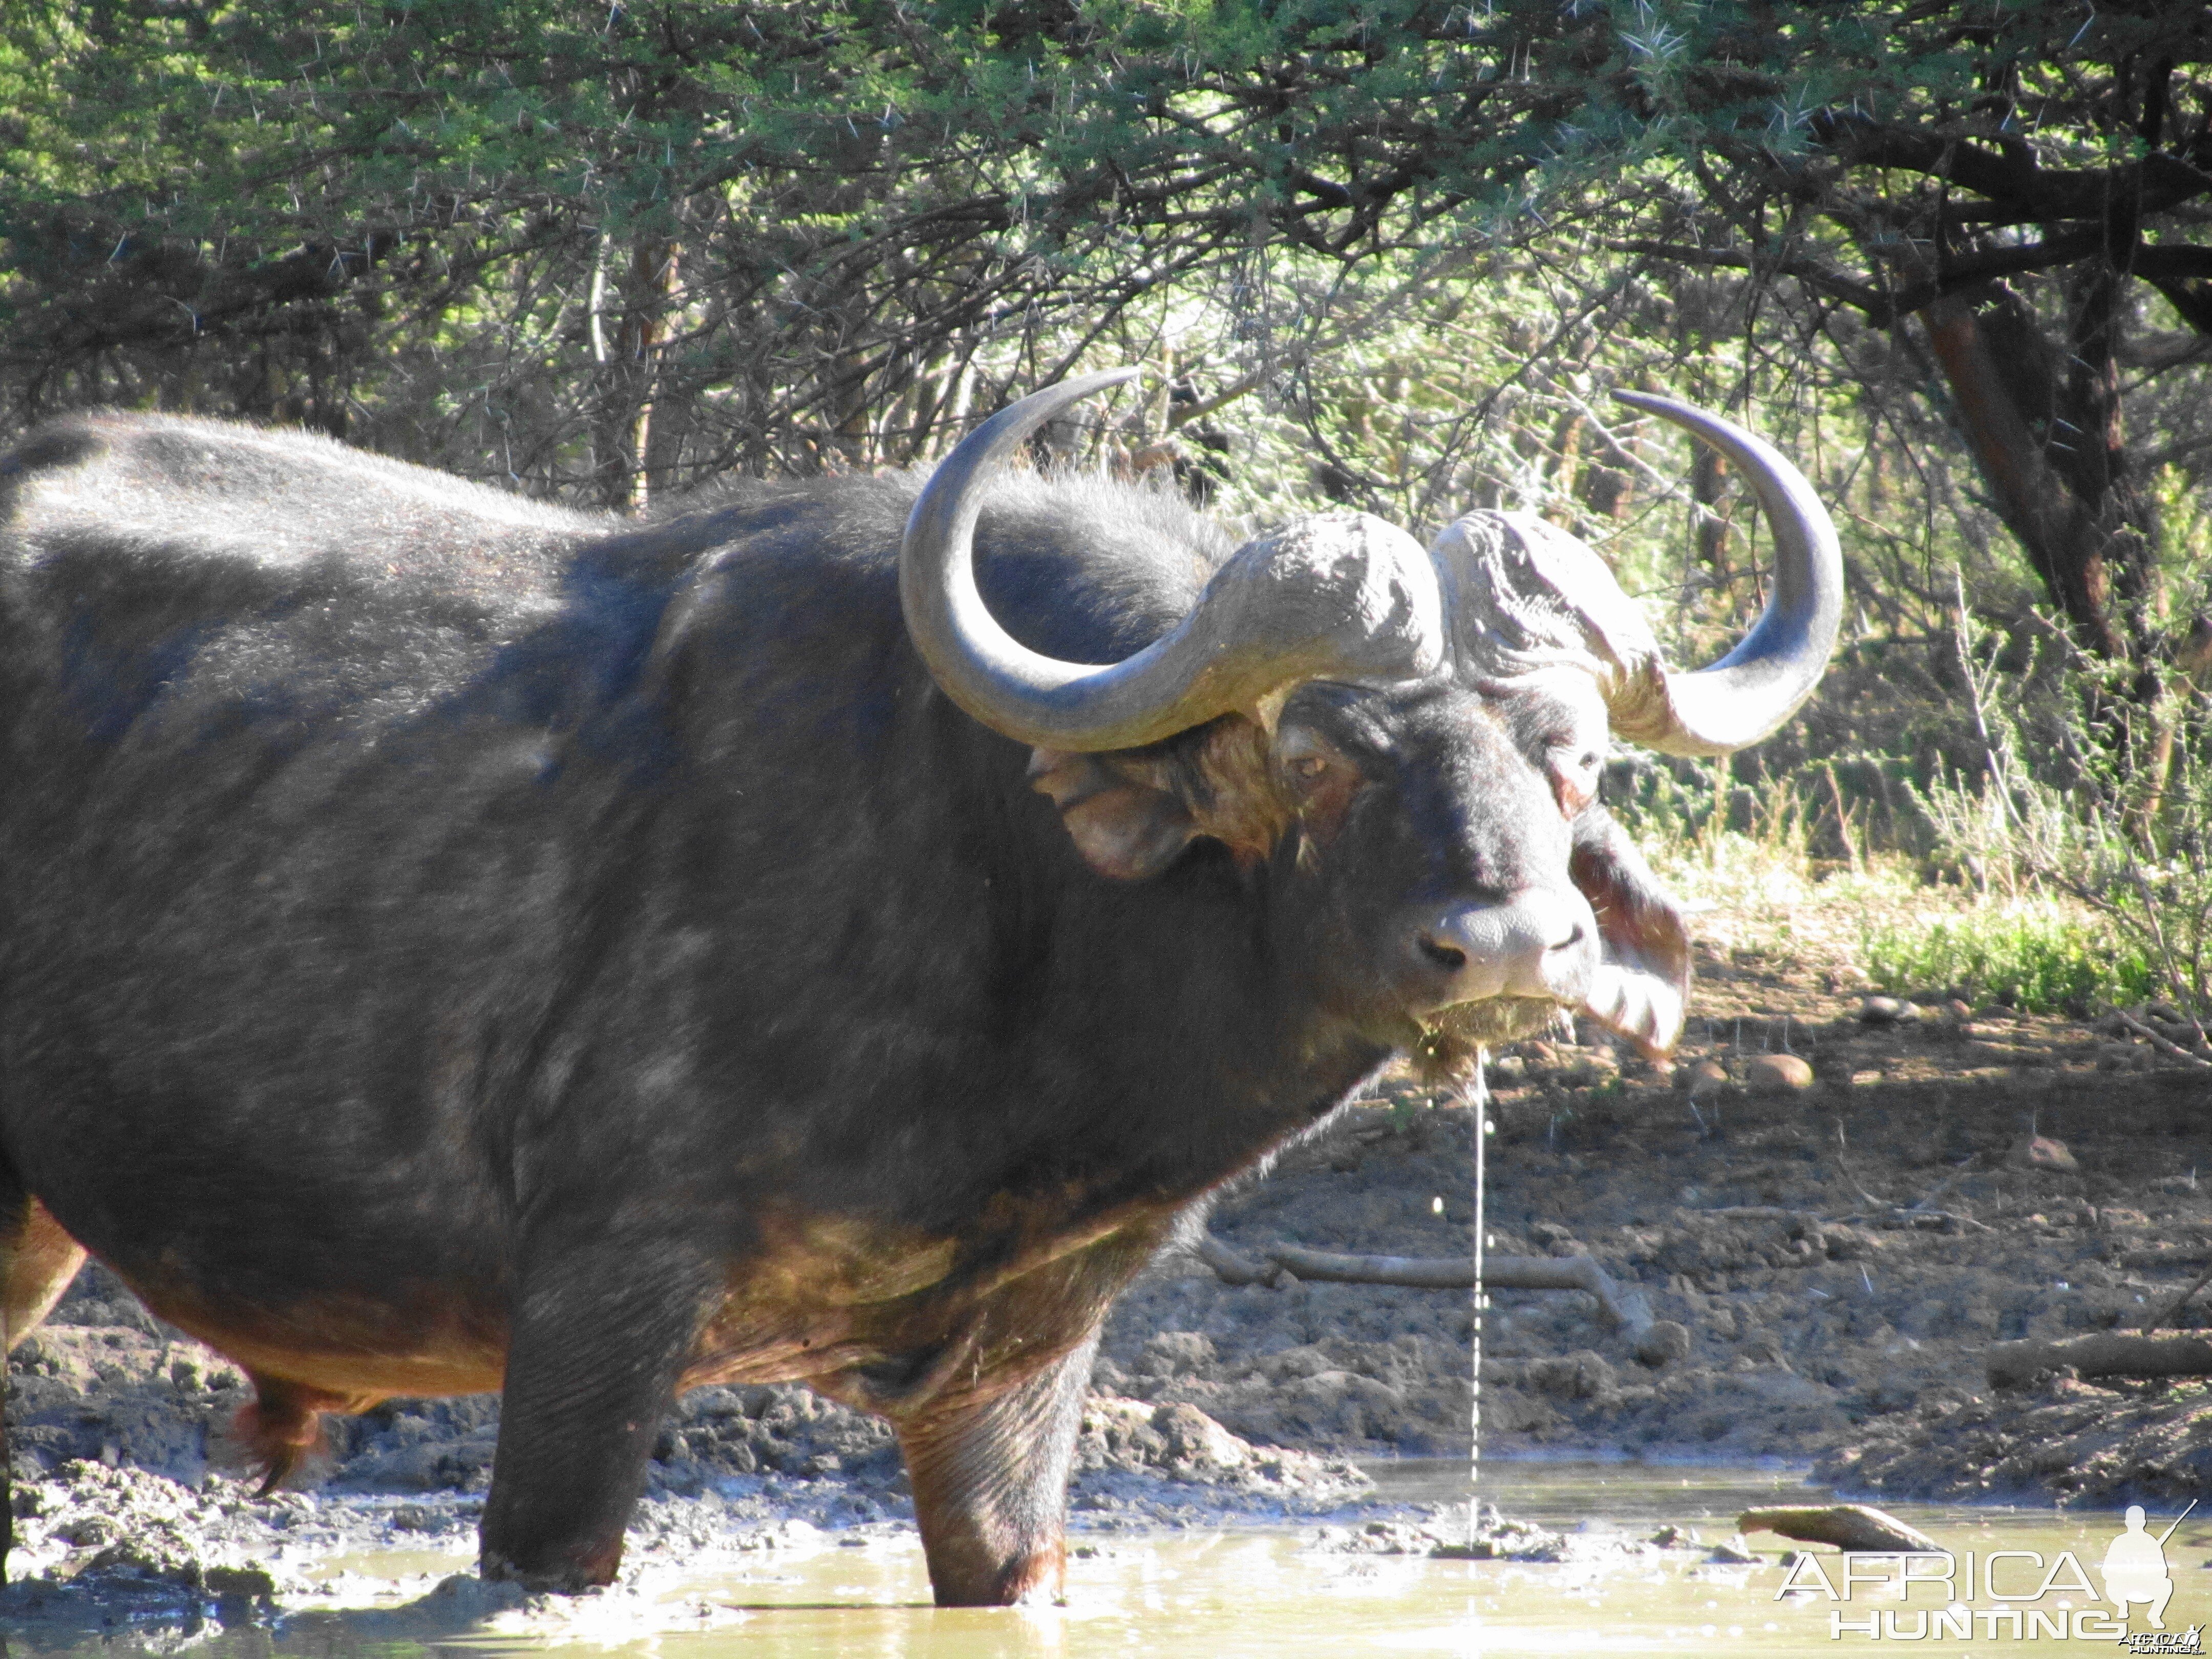 Good bull Buffalo at the waterhole